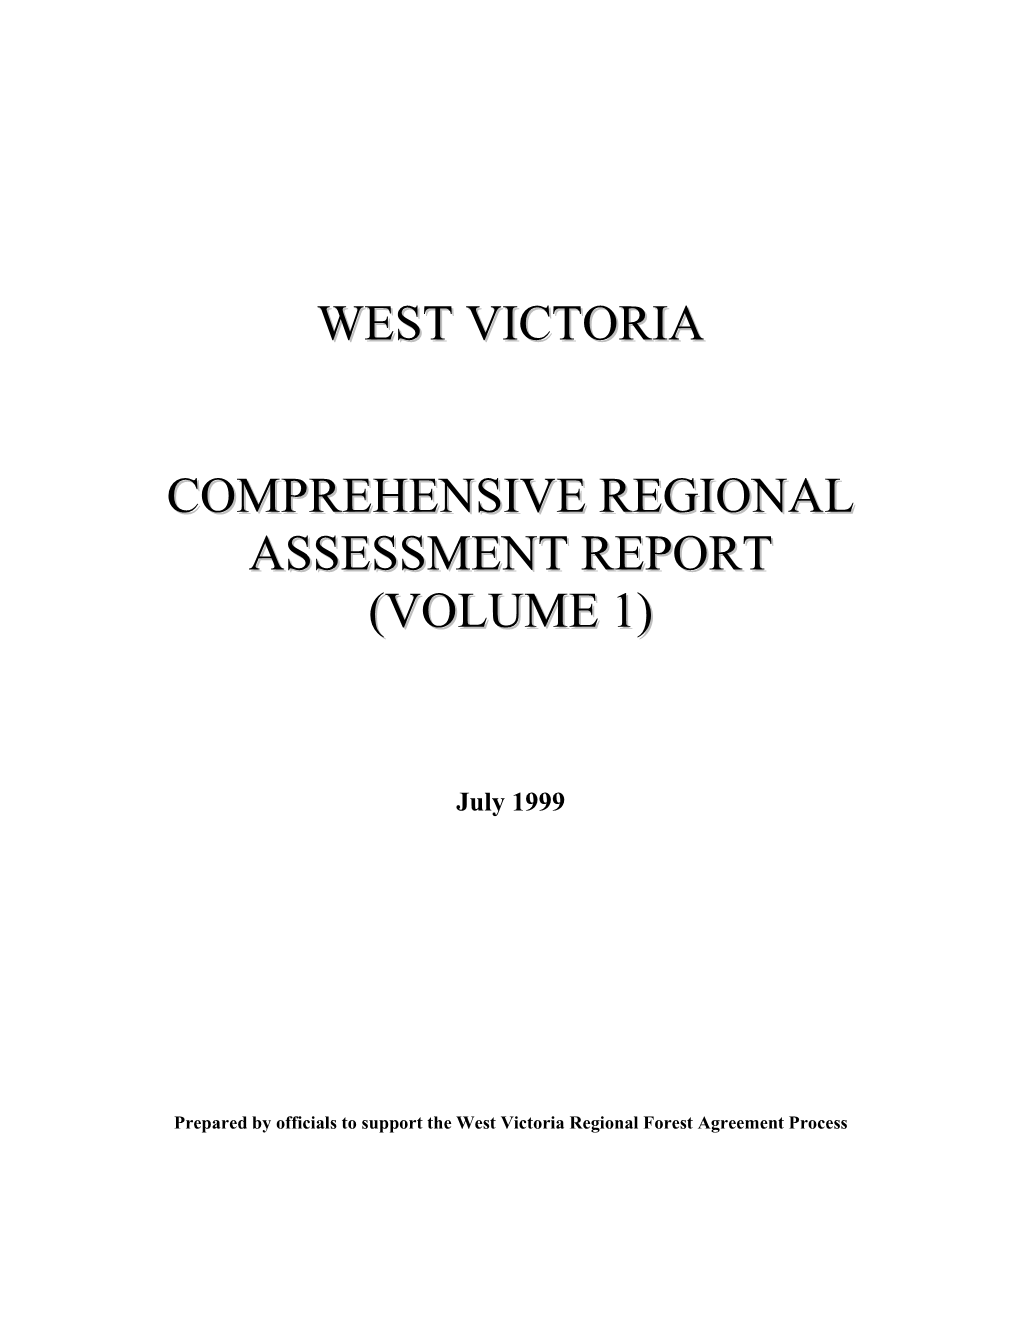 West Victporia